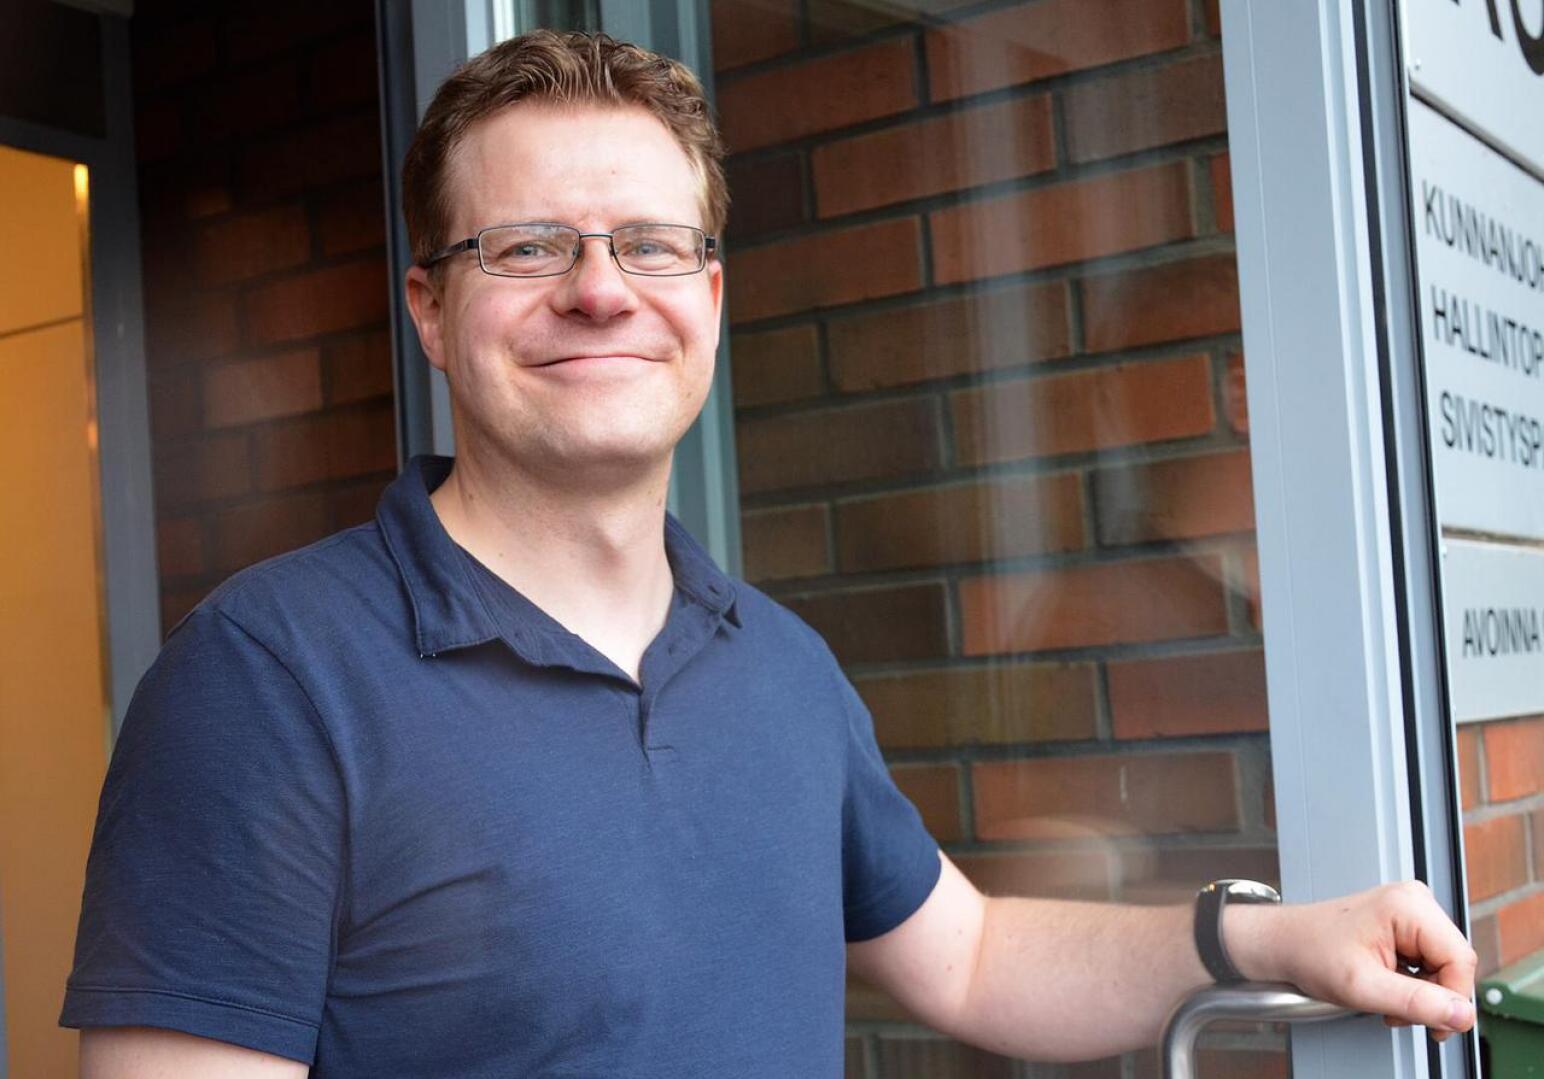 Elokuussa työnsä aloittanut Matti Pulkkinen ennätti työskennellä Alavieskan hallinto- ja sivistysjohtajana vain puoli vuotta.